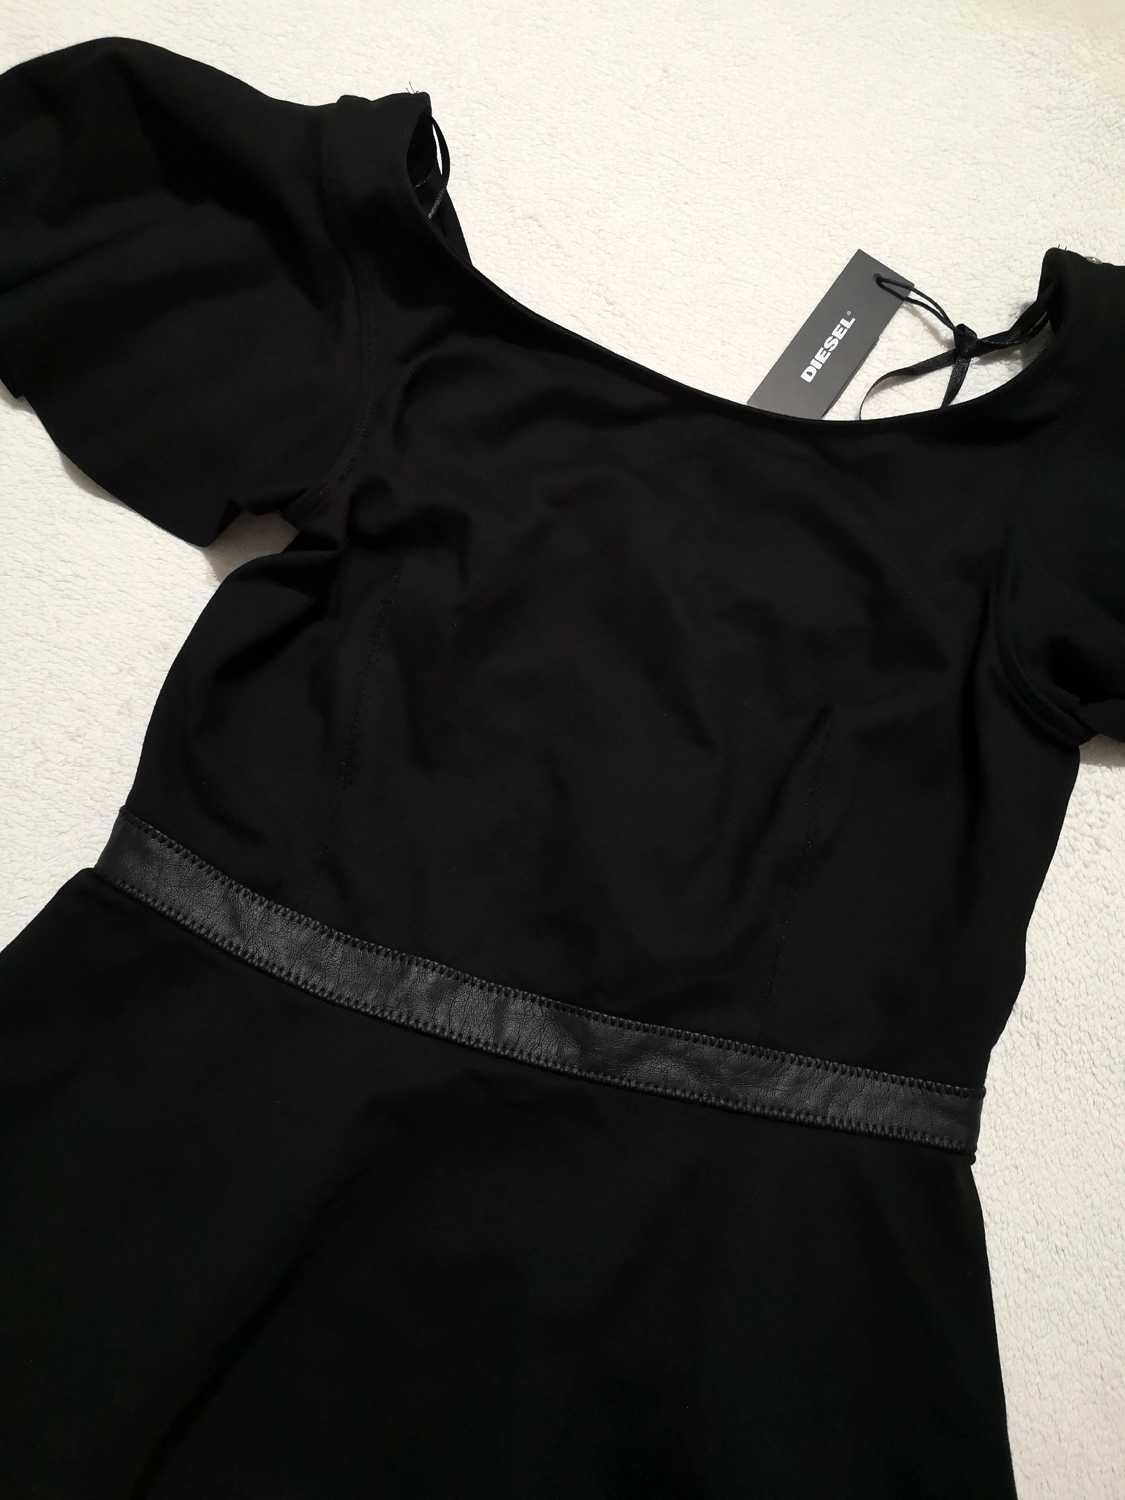 Koszulka Diesel czarna stylowa goth bluzka nowa S 36